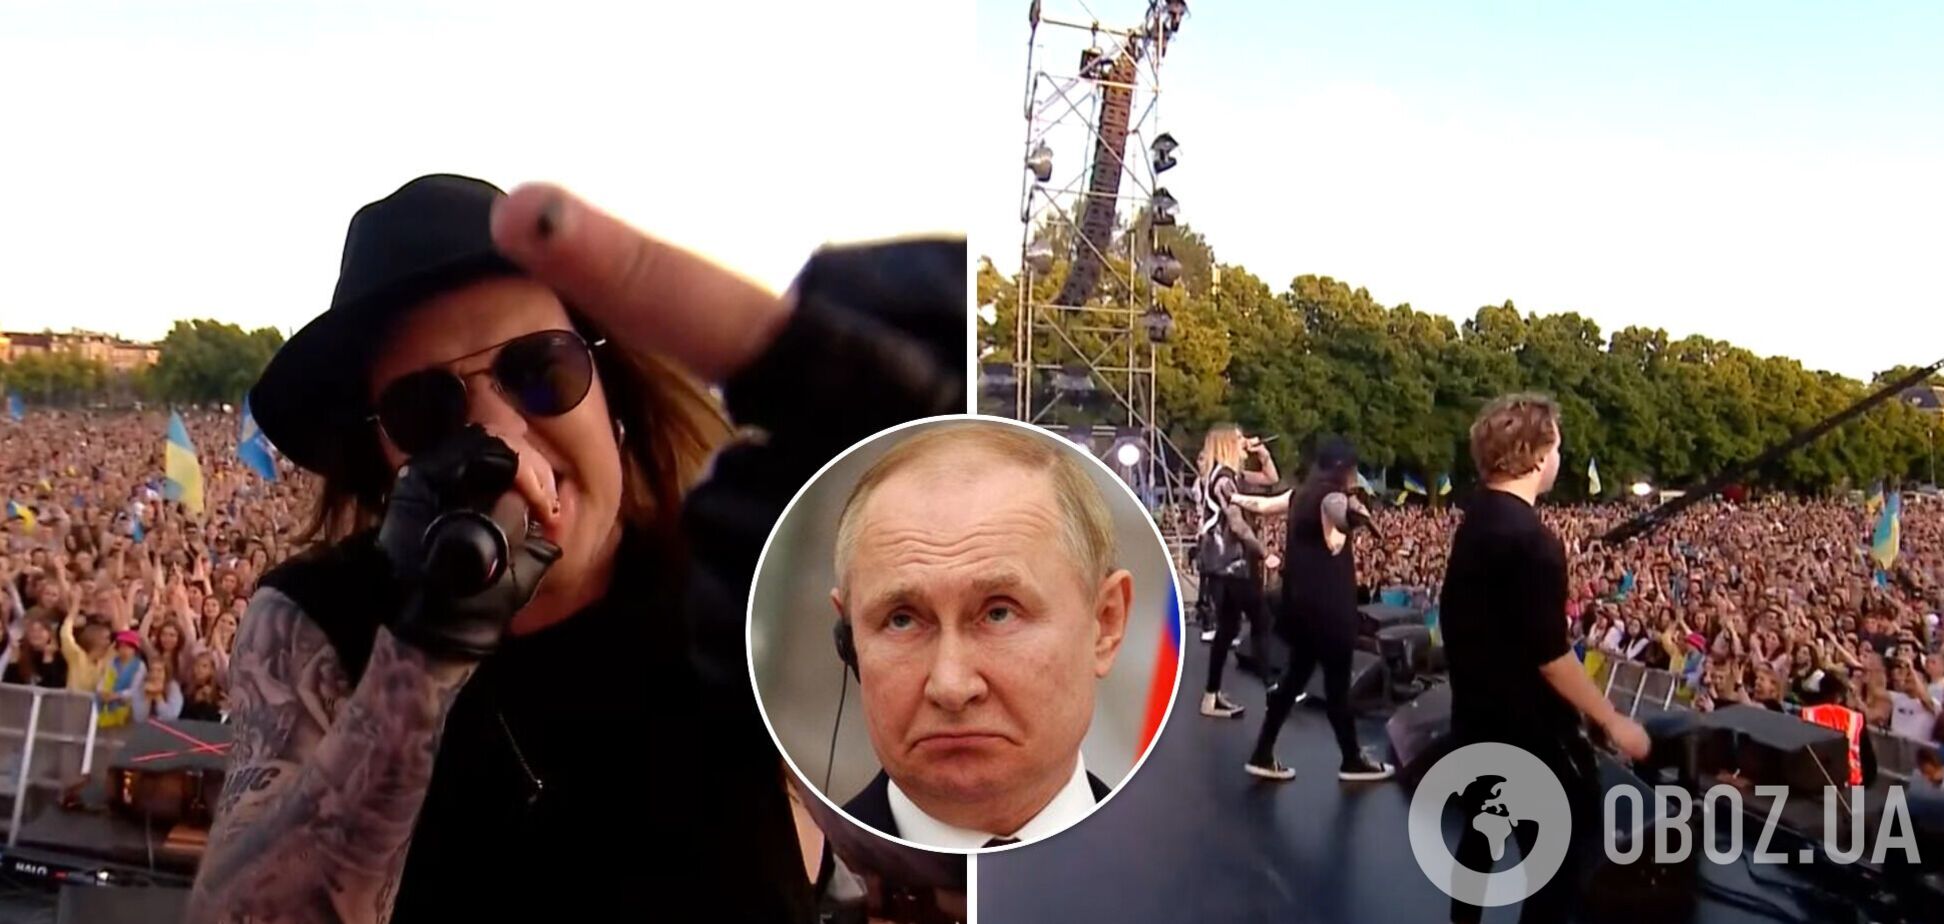 Известная финская группа показала средний палец Путину со сцены. Видео